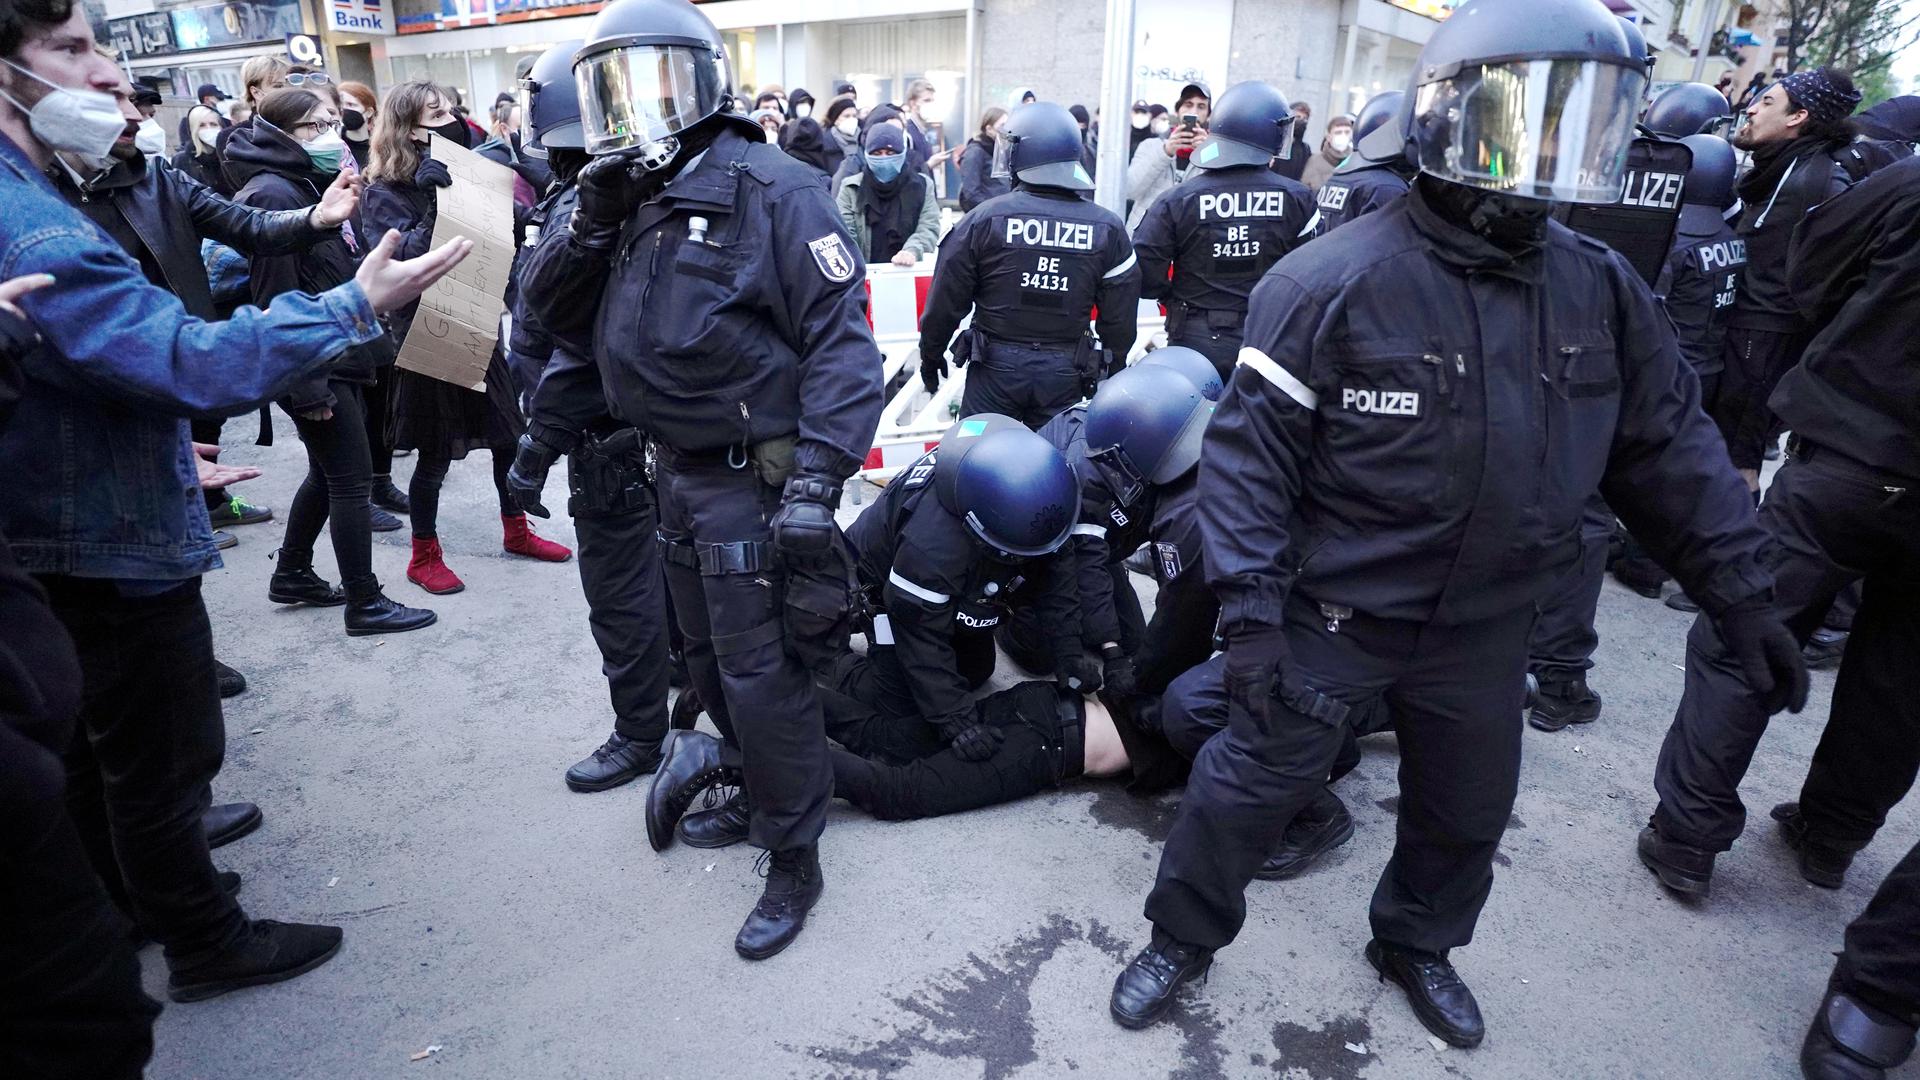 Mit Gewalt gegen das Gewaltmonopol: Während die Kriminalität in Deutschland relativ gering bleibt, wird die Verrohung in Teilen der Gesellschaft zum Problem. Polizisten geraten nicht selten in gefährliche Situationen, etwa auf Demonstrationen, und es gibt mehr Gewalttaten gegen Polizeibeamte.